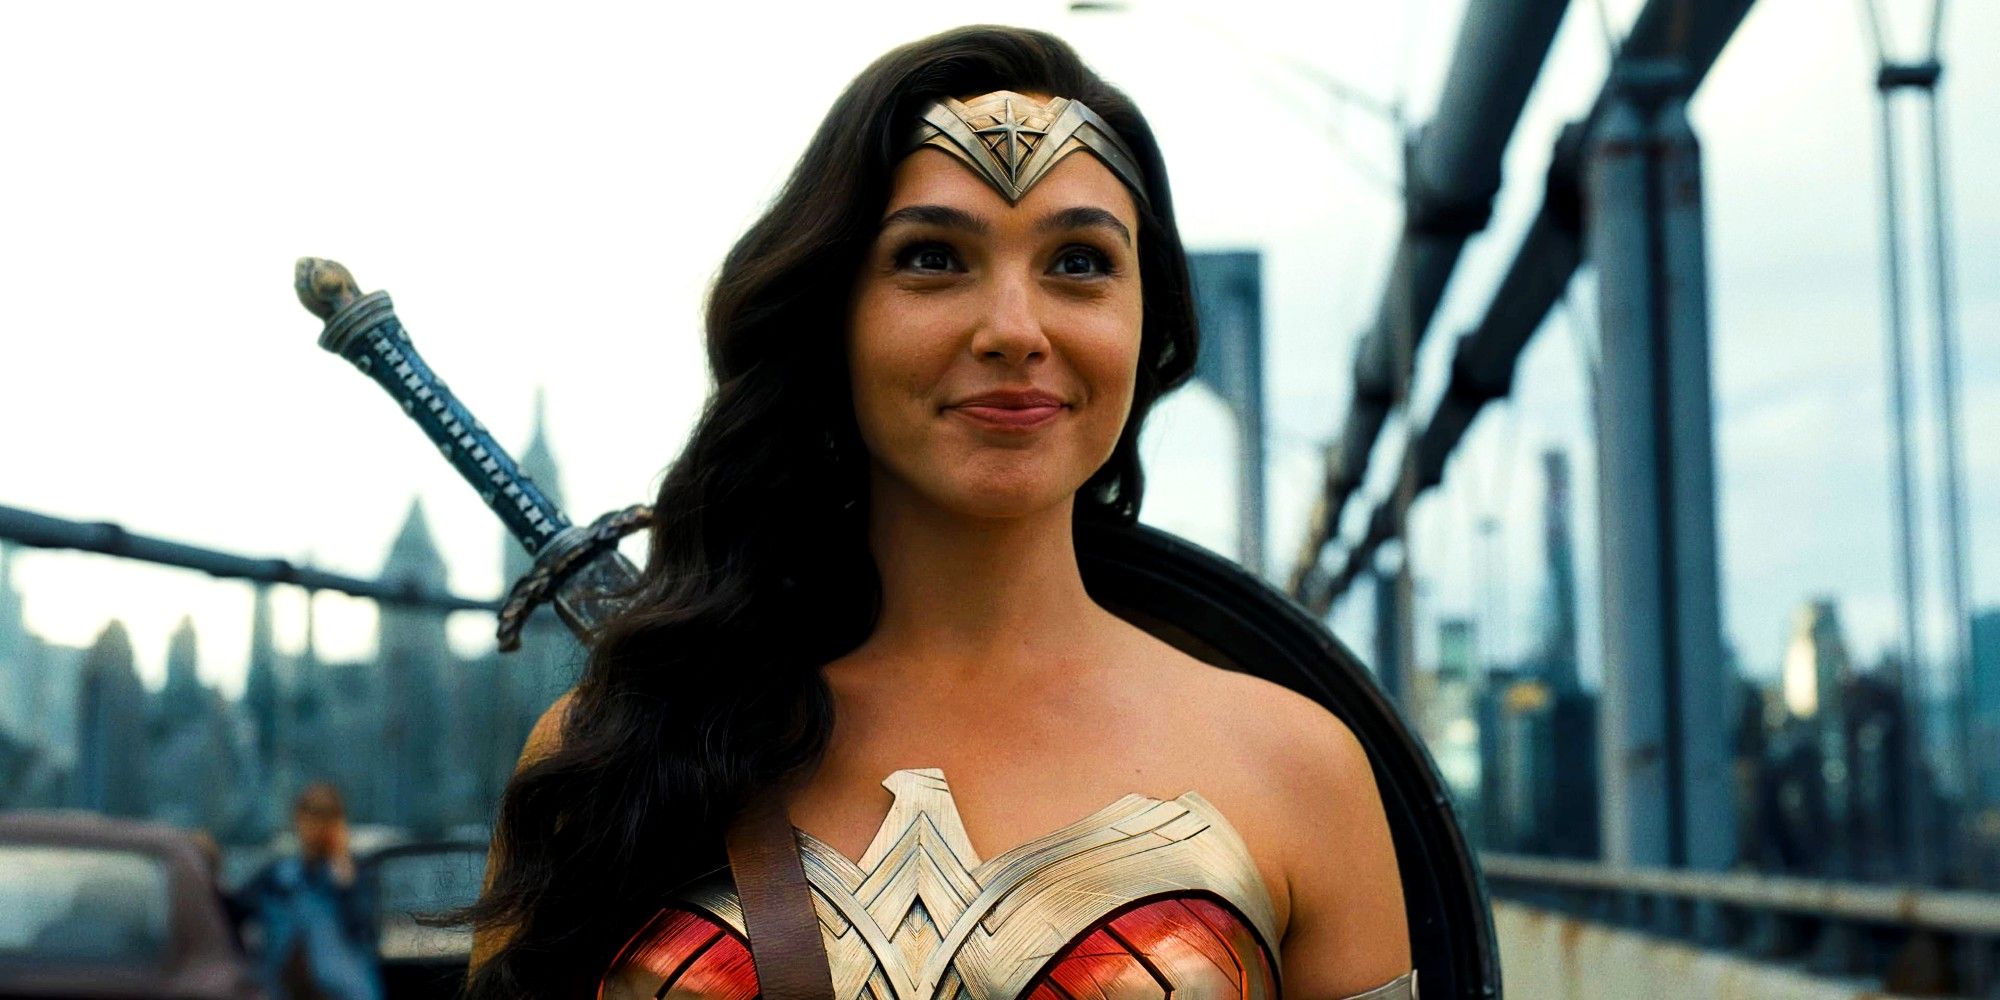 “Esta imagen es la indicada”: Los rumores sobre el casting de Wonder Woman de DCU surgen después de la misteriosa publicación de James Gunn